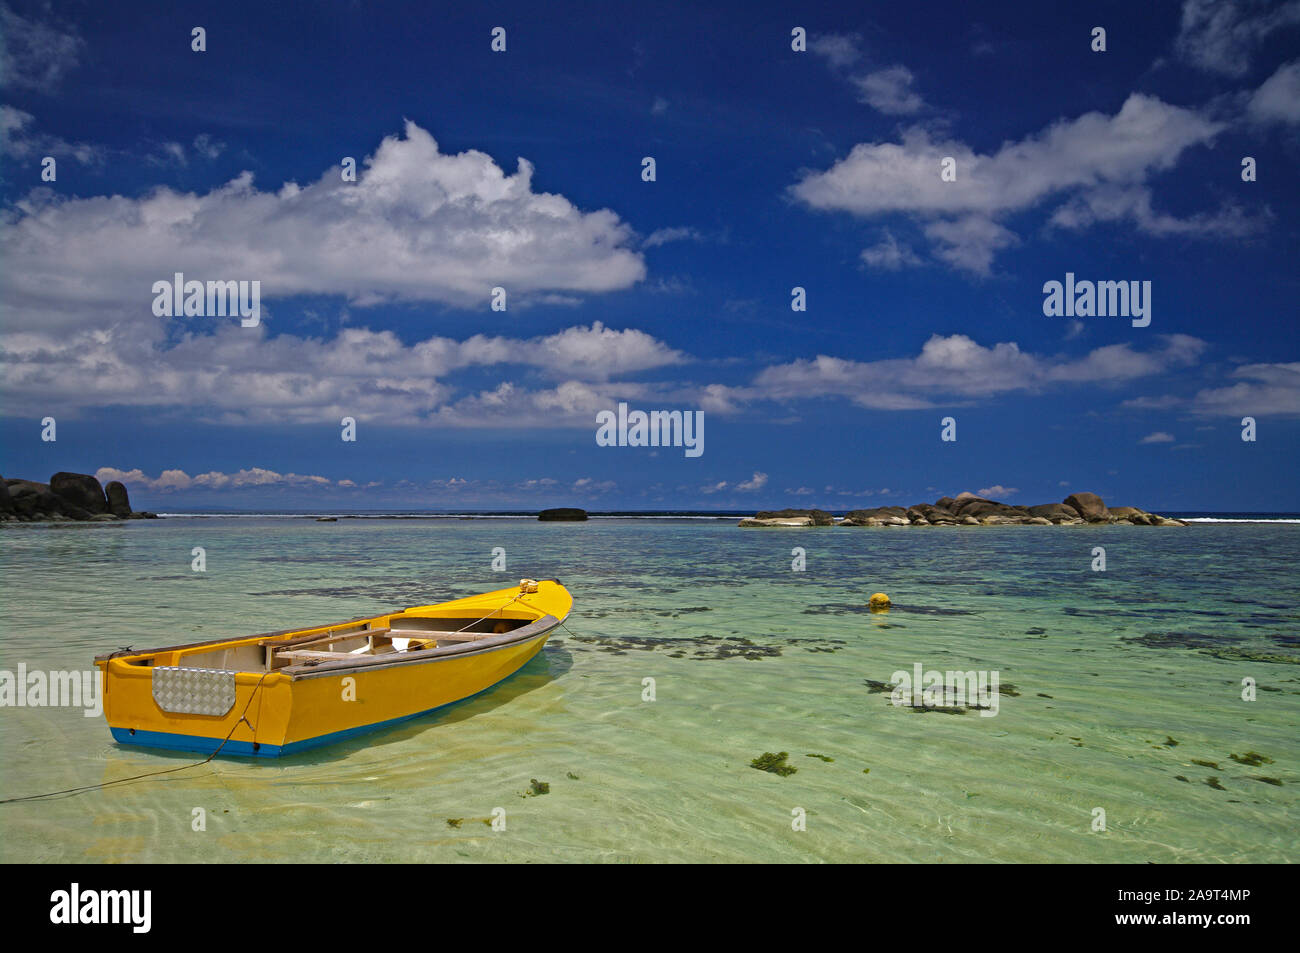 Buntes gelbes traditionelles Fischerboot am Strand der Anse Forbans, An der Südostküste tropisches Inselparadies der Hauptinsel Mahe, indischer Ozean, Foto de stock